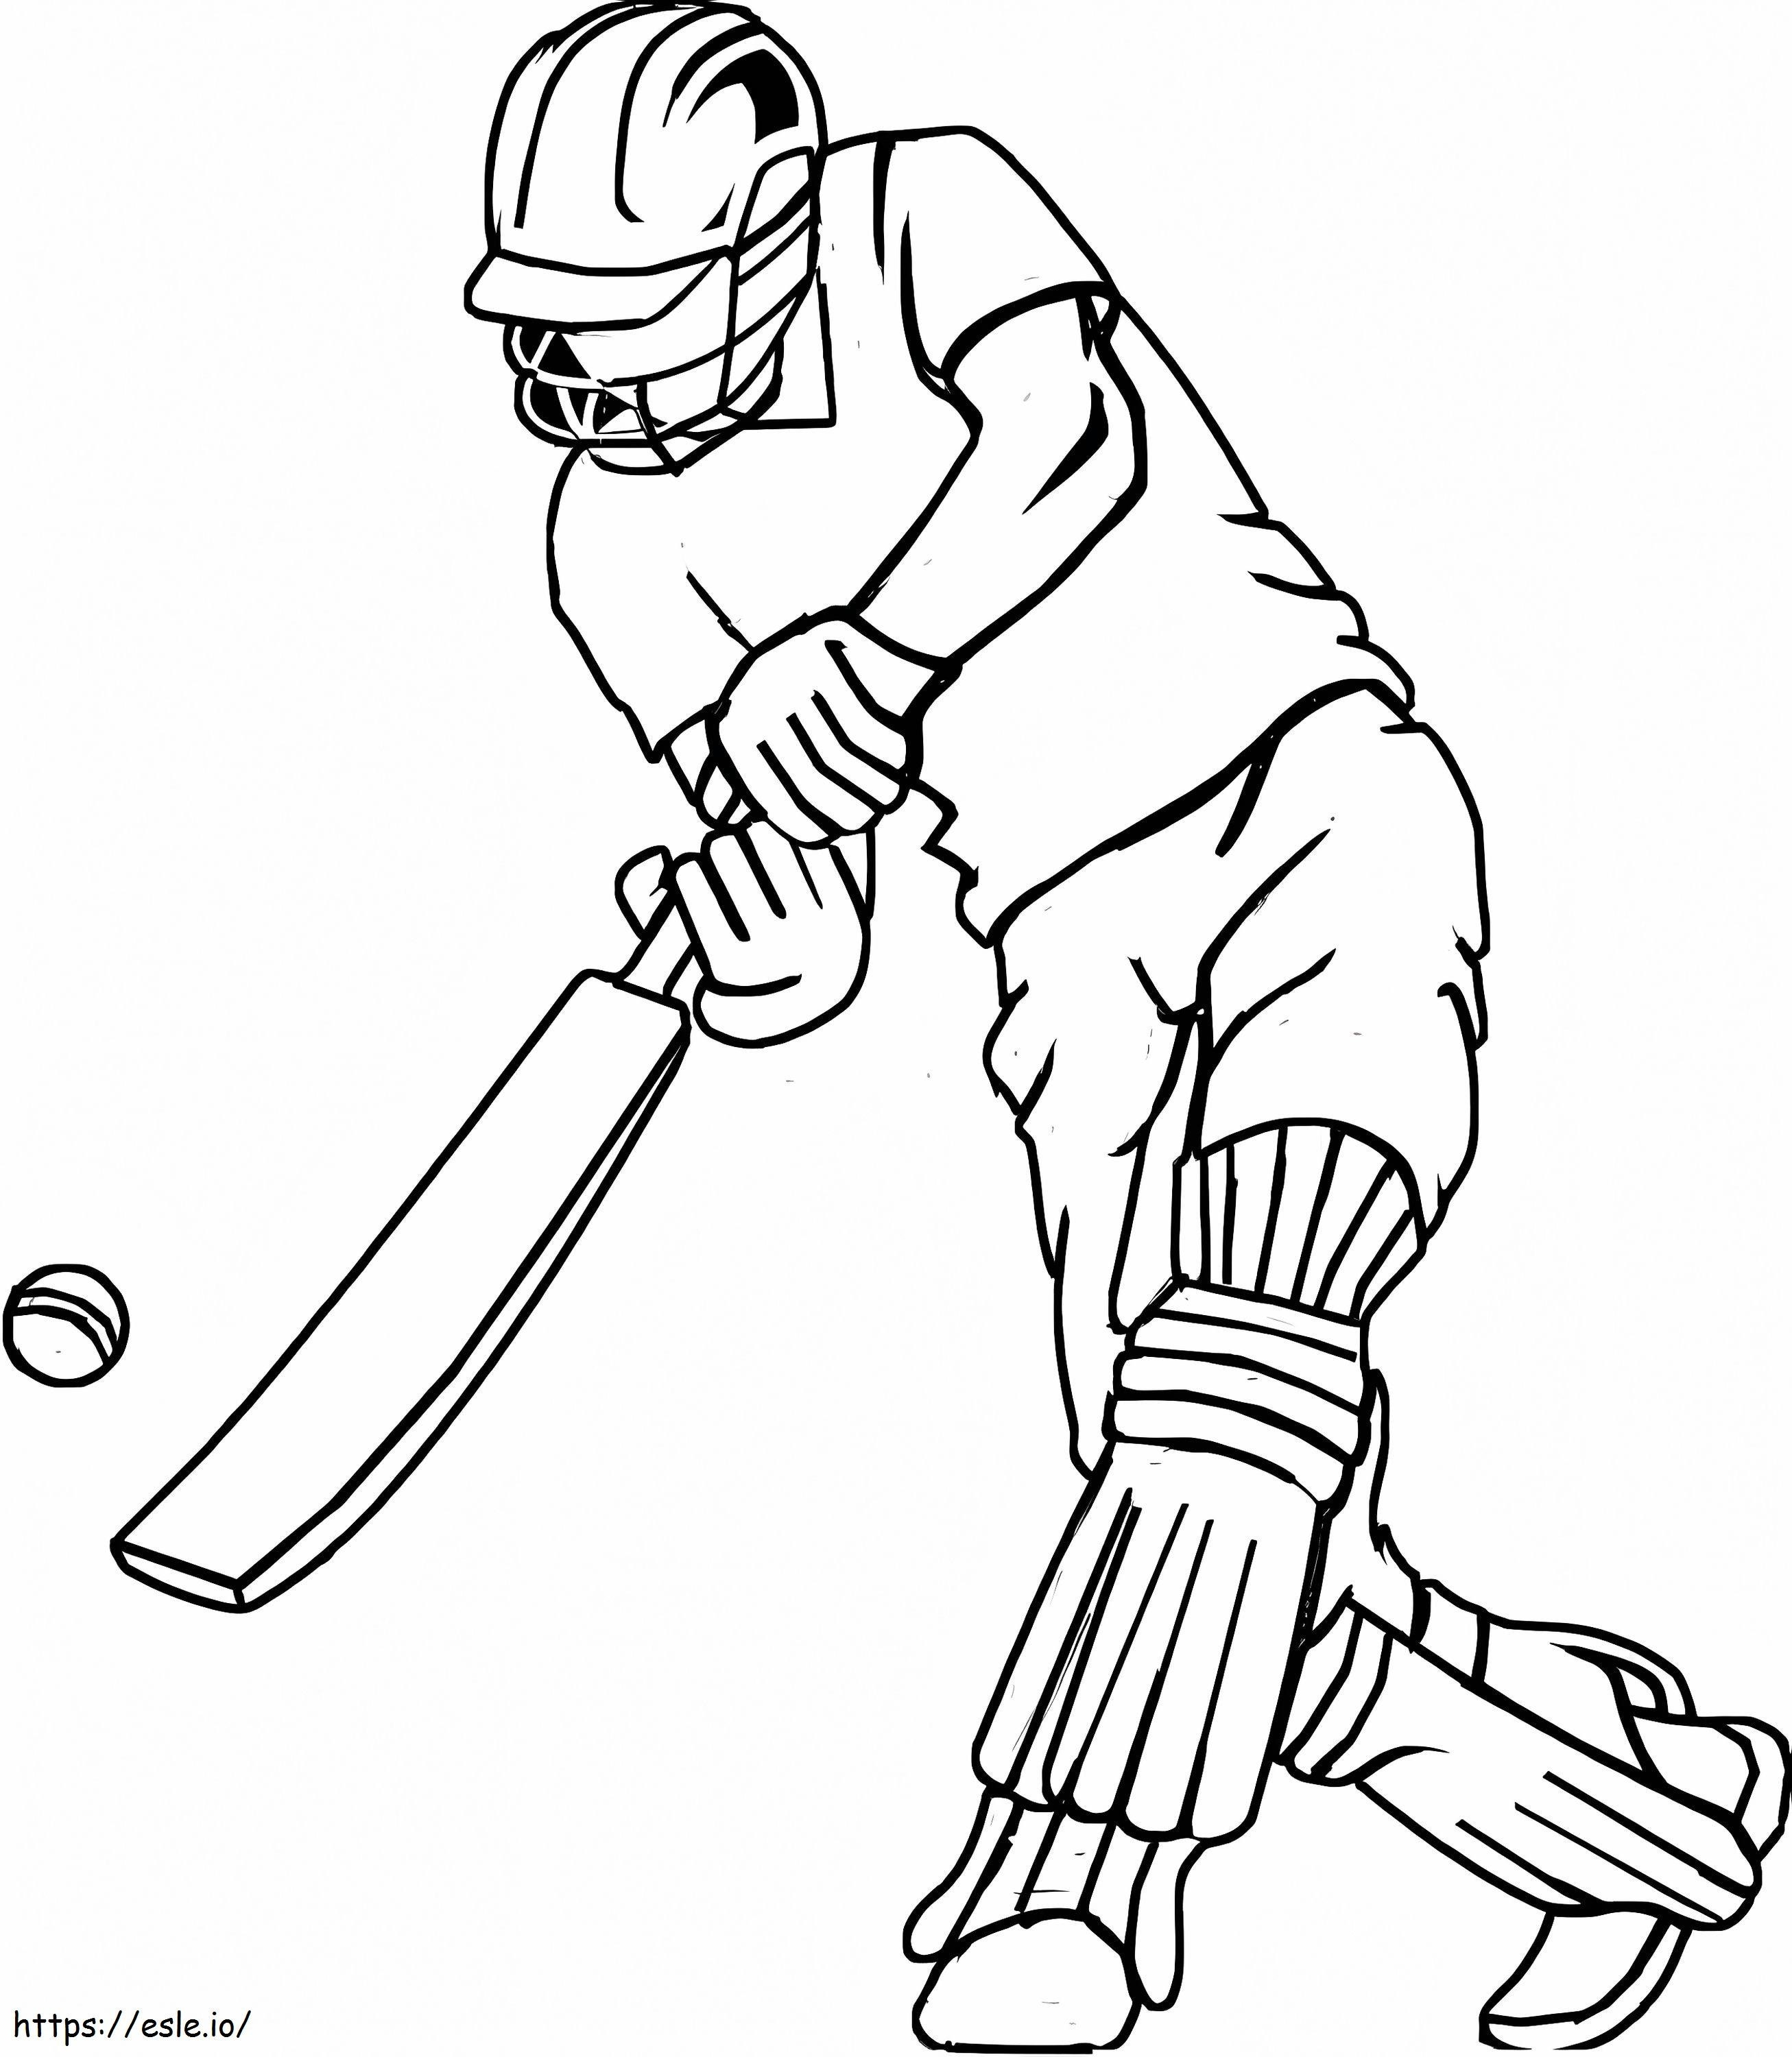 Grundlegender Cricketspieler ausmalbilder